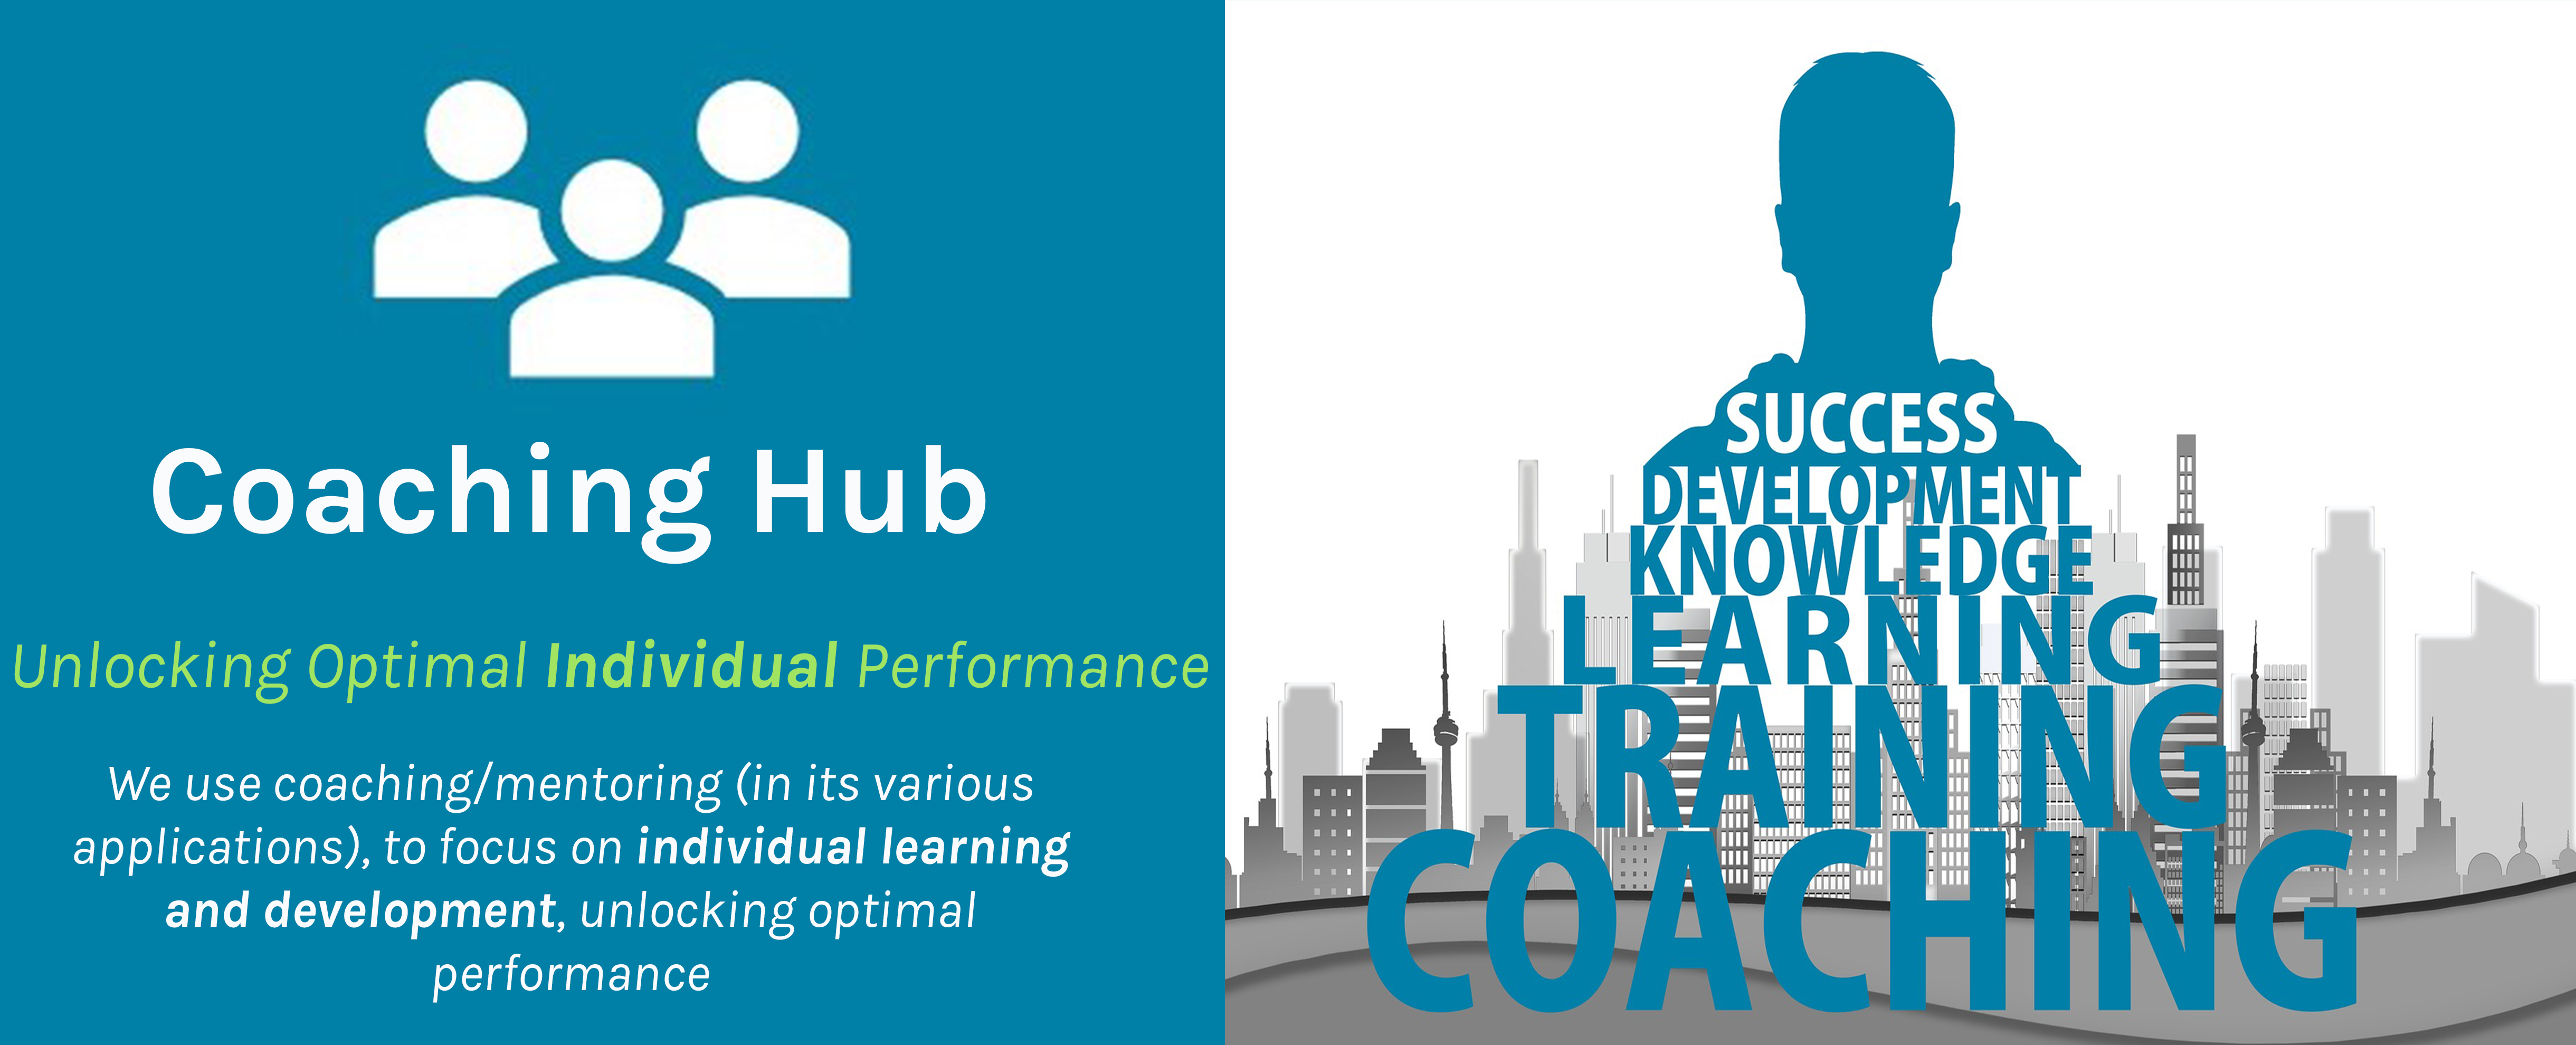 coaching hub1